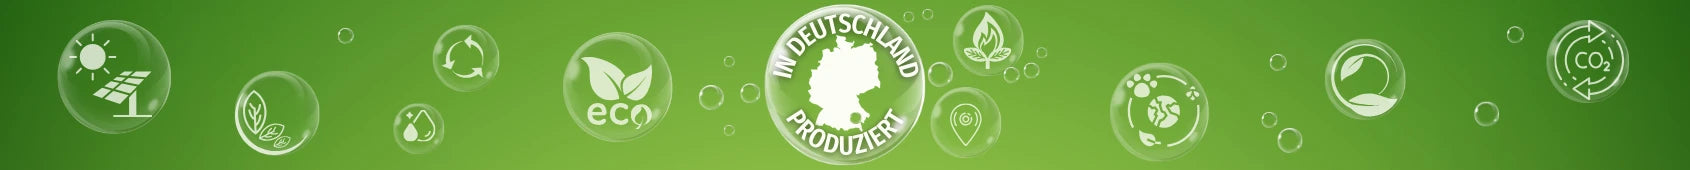 Mit grüner Energie aus nachwachsenden Rohstoffen produziert in Deutschland